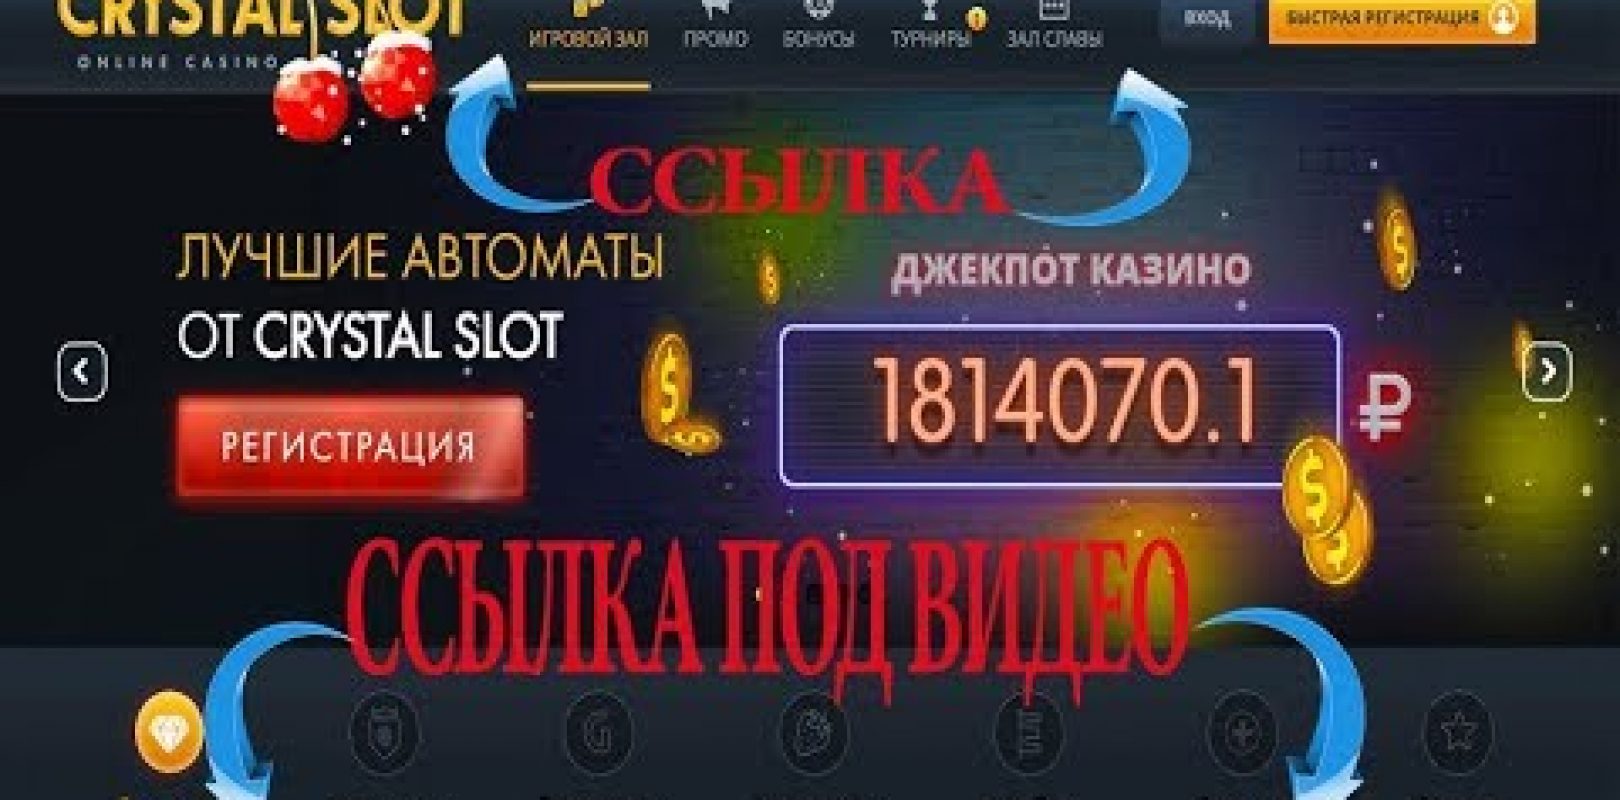 Www.free bitcoin casino ビットコインカジノ スロットゲーム